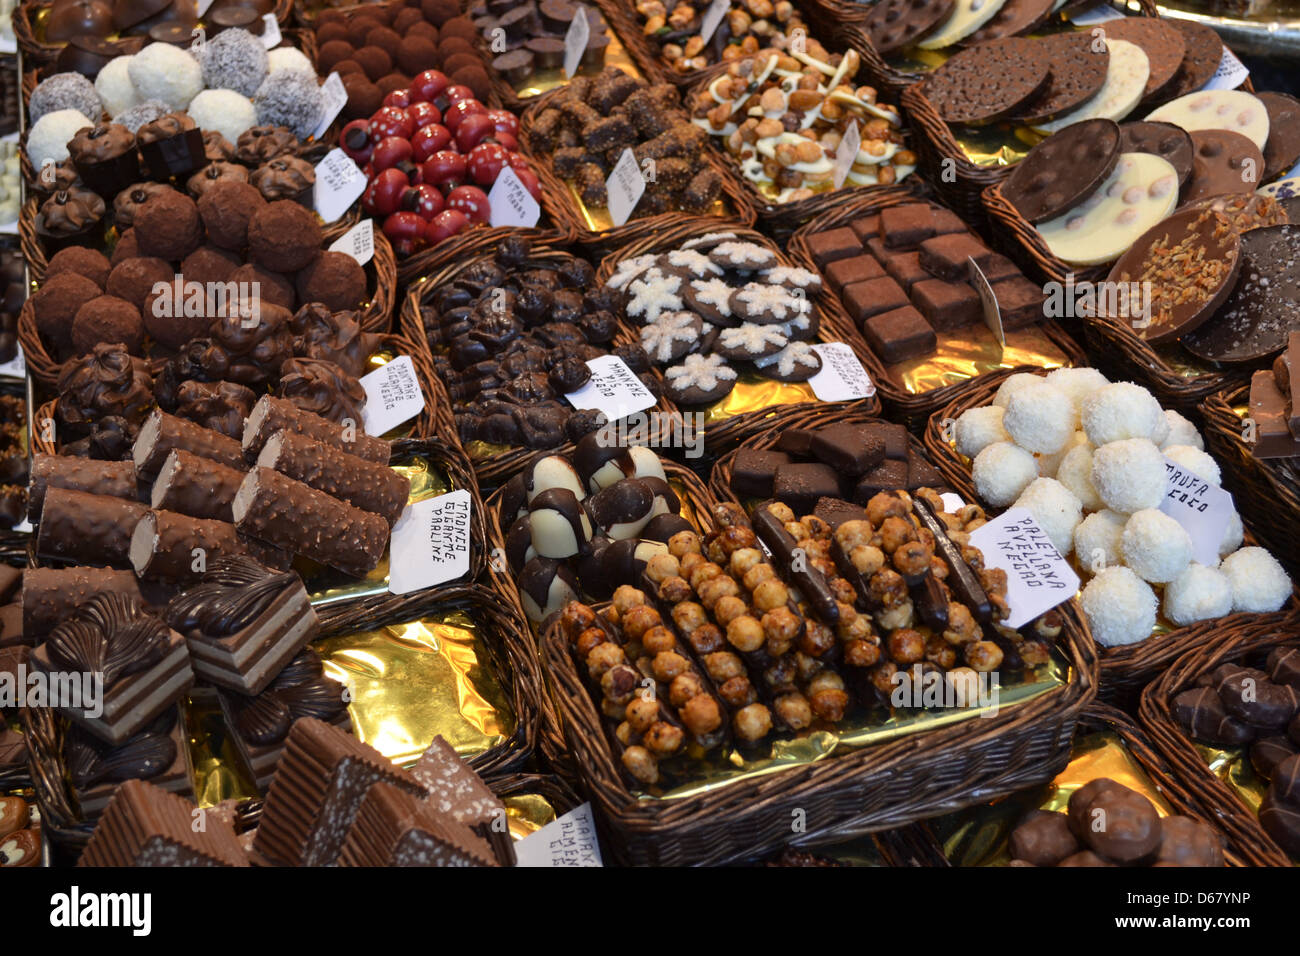 Chocolats, marché alimentaire Boqueria, Barcelone. Banque D'Images